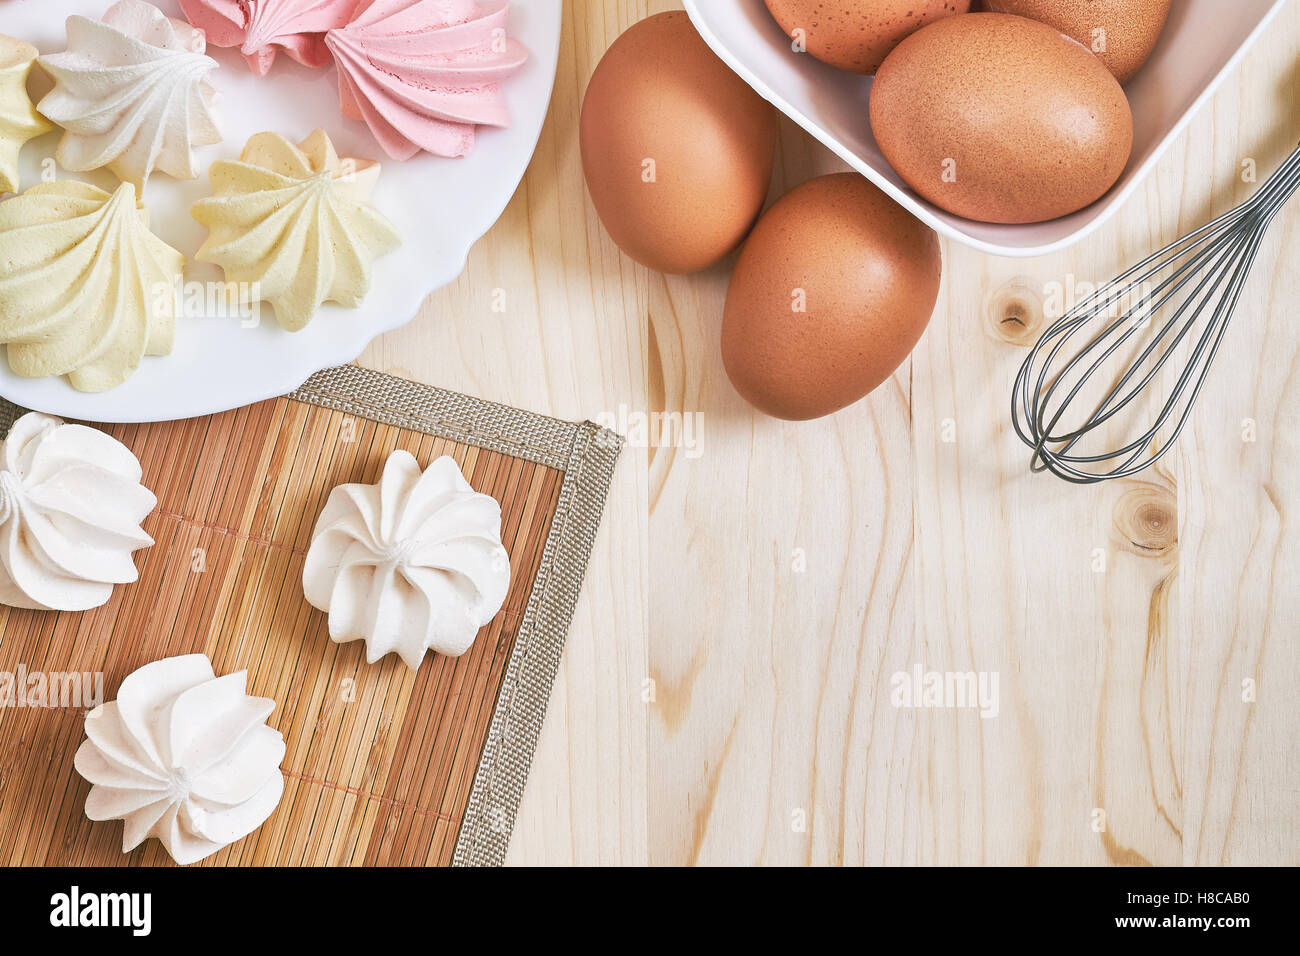 Freschi colori deliziosi biscotti di meringa su un tavolo di legno con le uova e mescolare con una frusta. Vista da sopra con lo spazio di copia Foto Stock